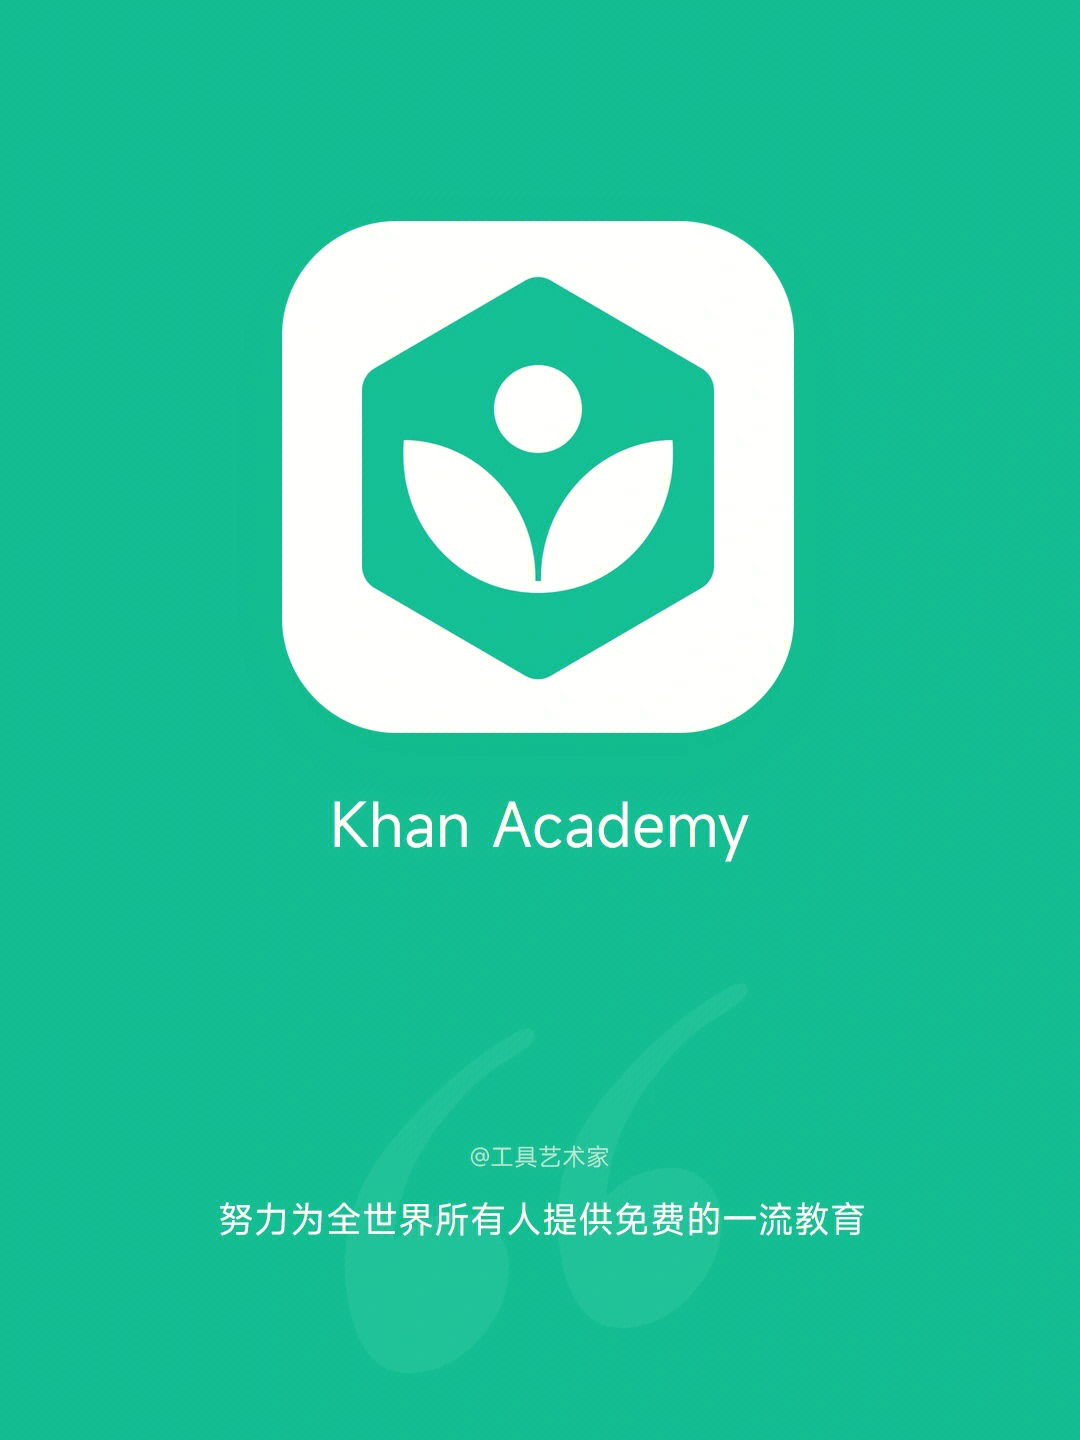 949494可汗学院是一款适合所有人的学习类app,内容包含数学